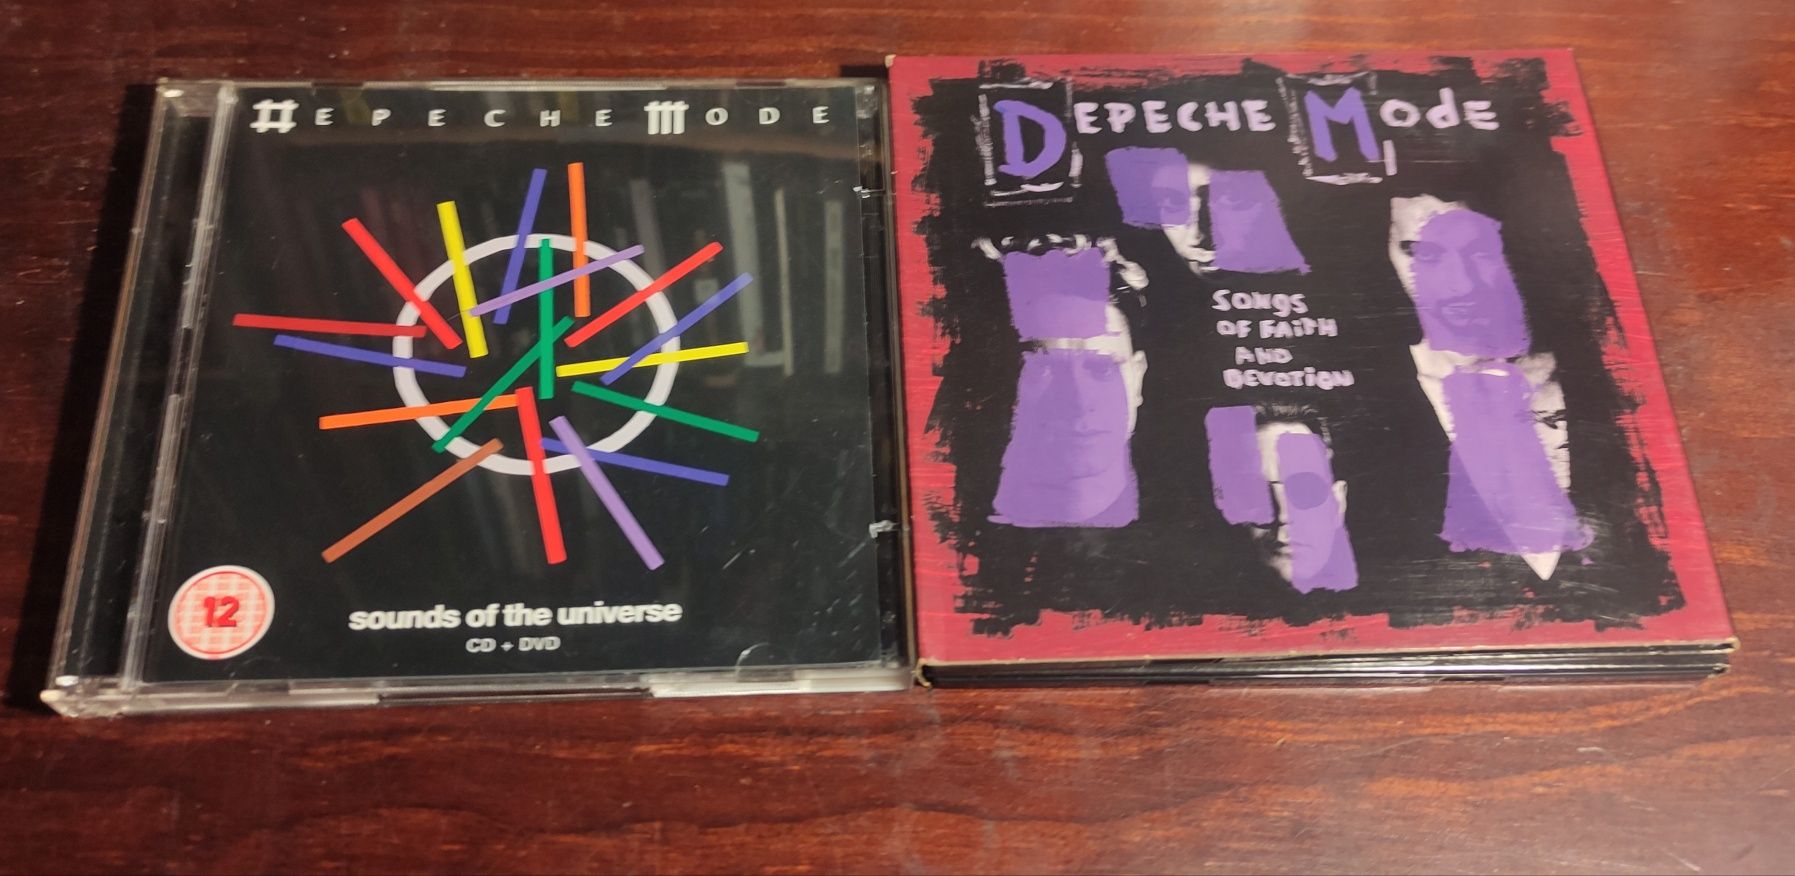 Varios CDs Synthpop Post Punk 80s Bauhaus Nick Cave Depeche Mode Sound